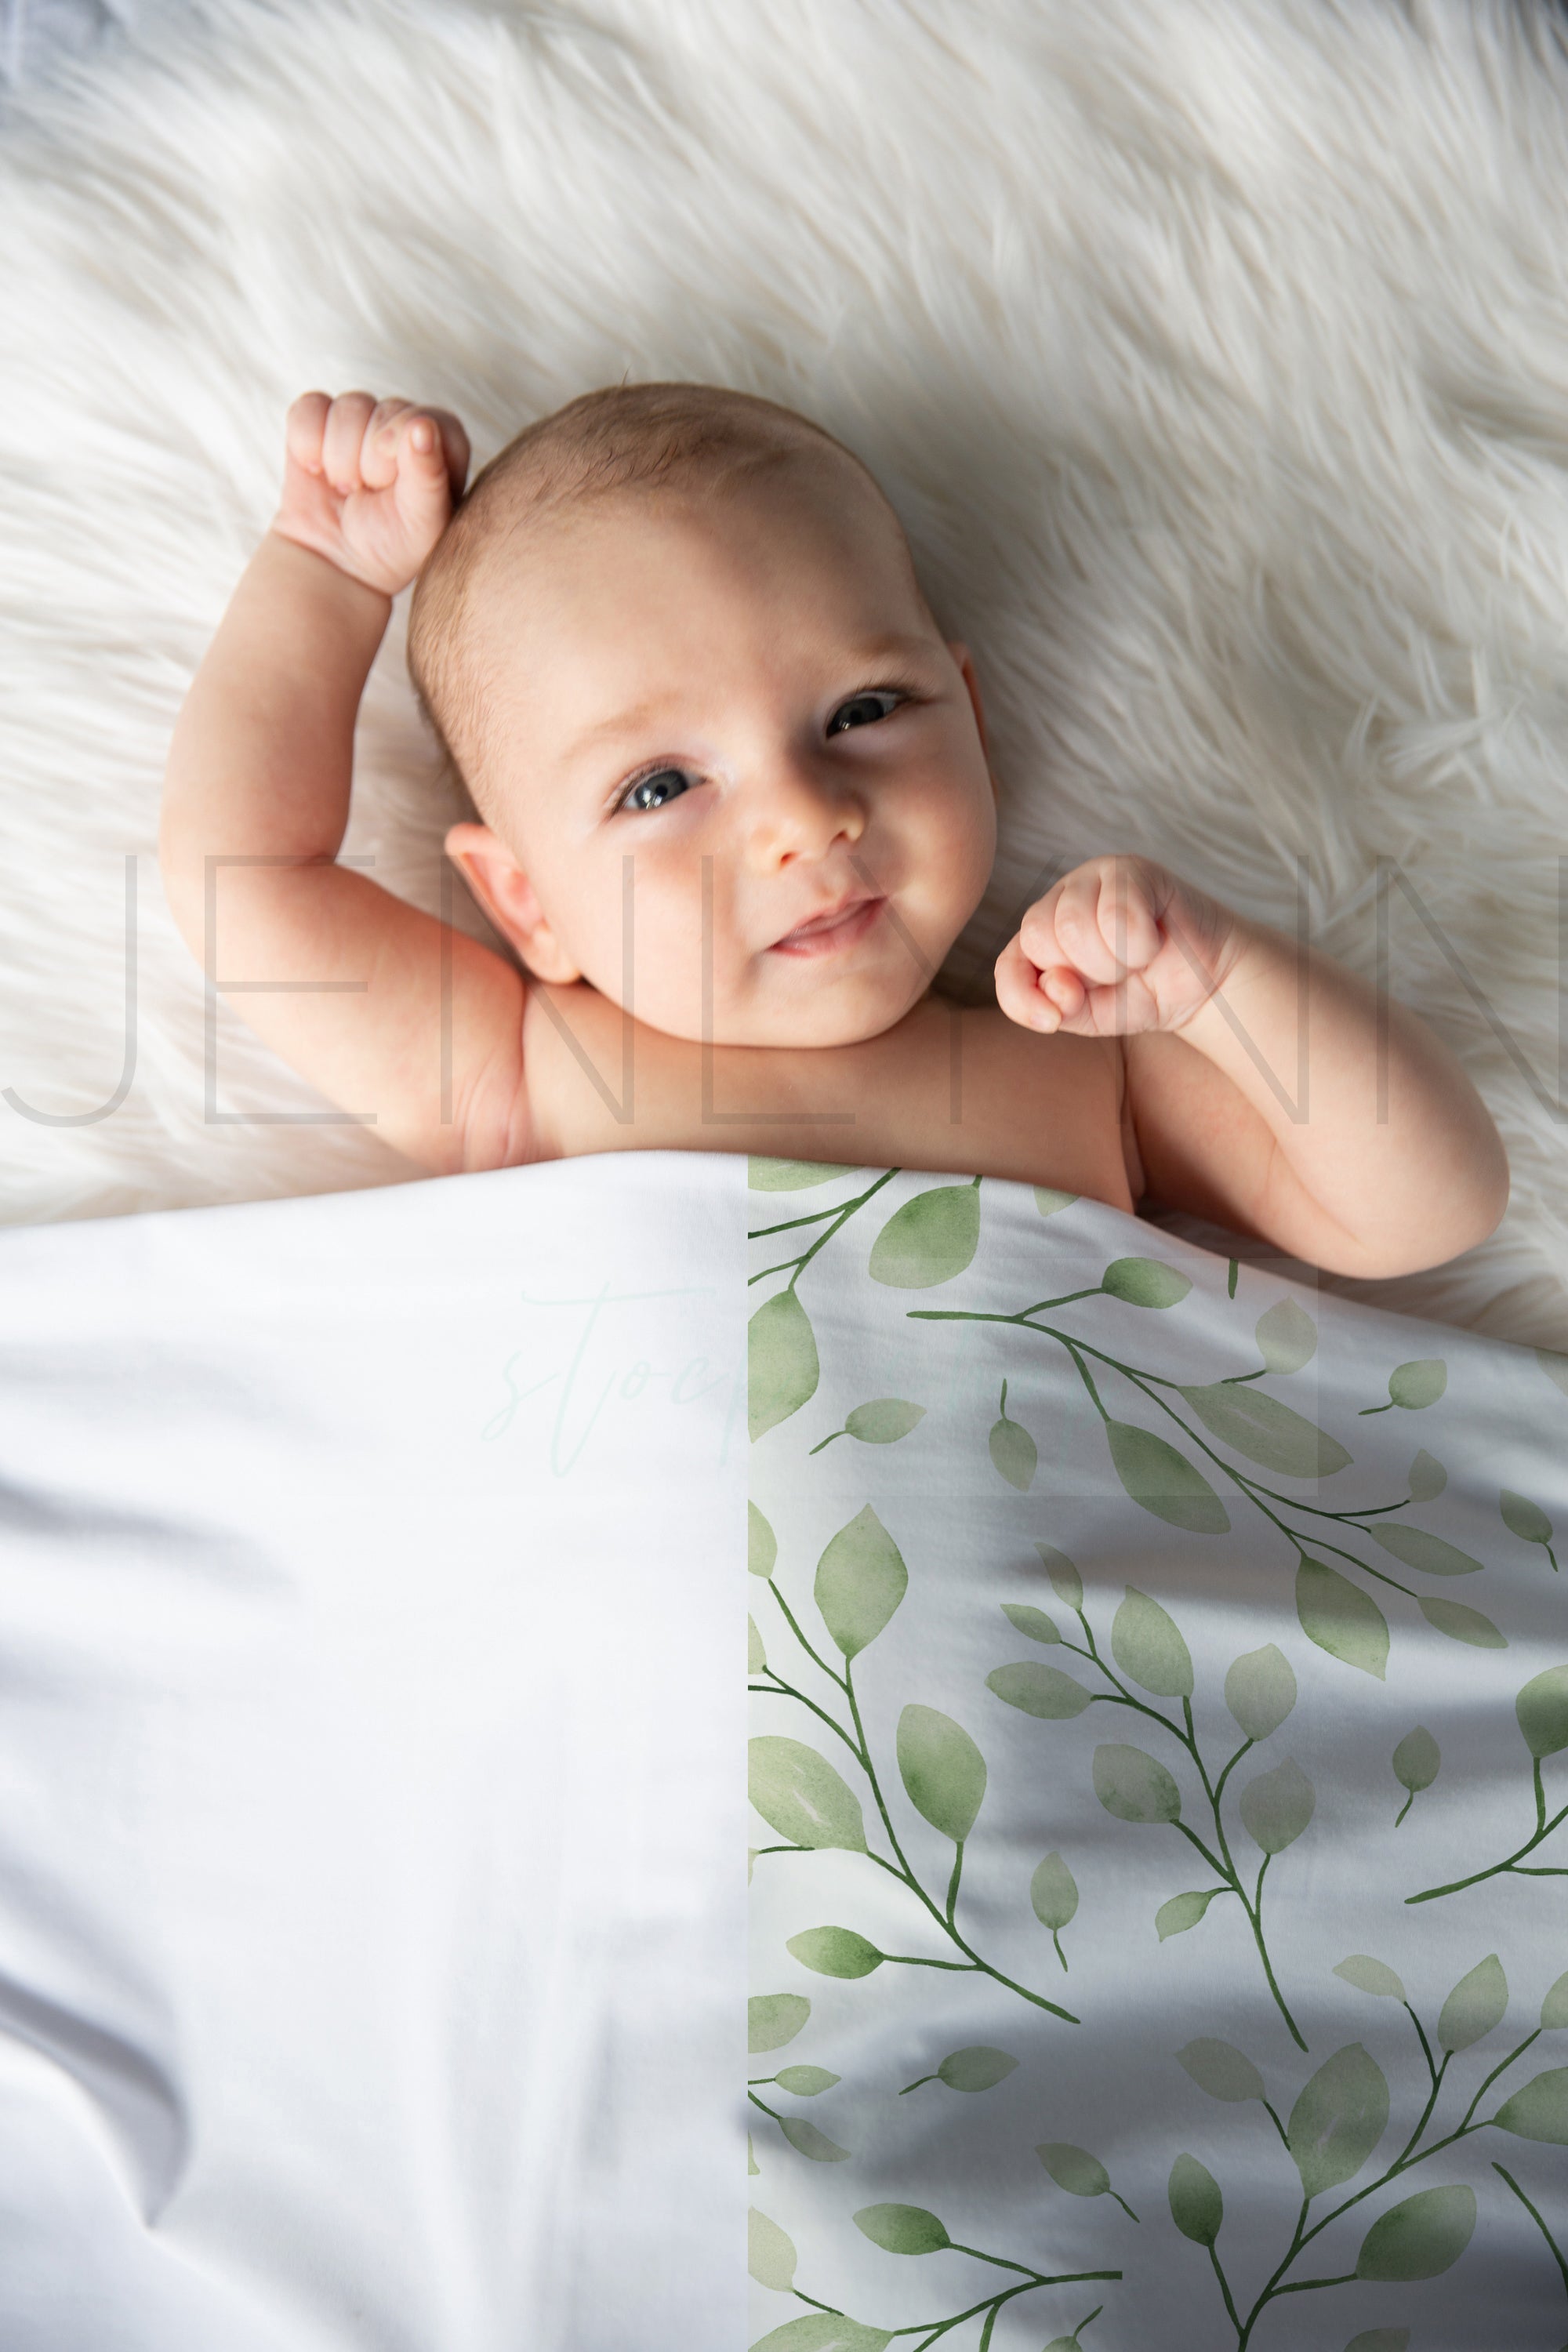 Stretch Jersey Blanket on baby boy Mockup #BB16 PSD